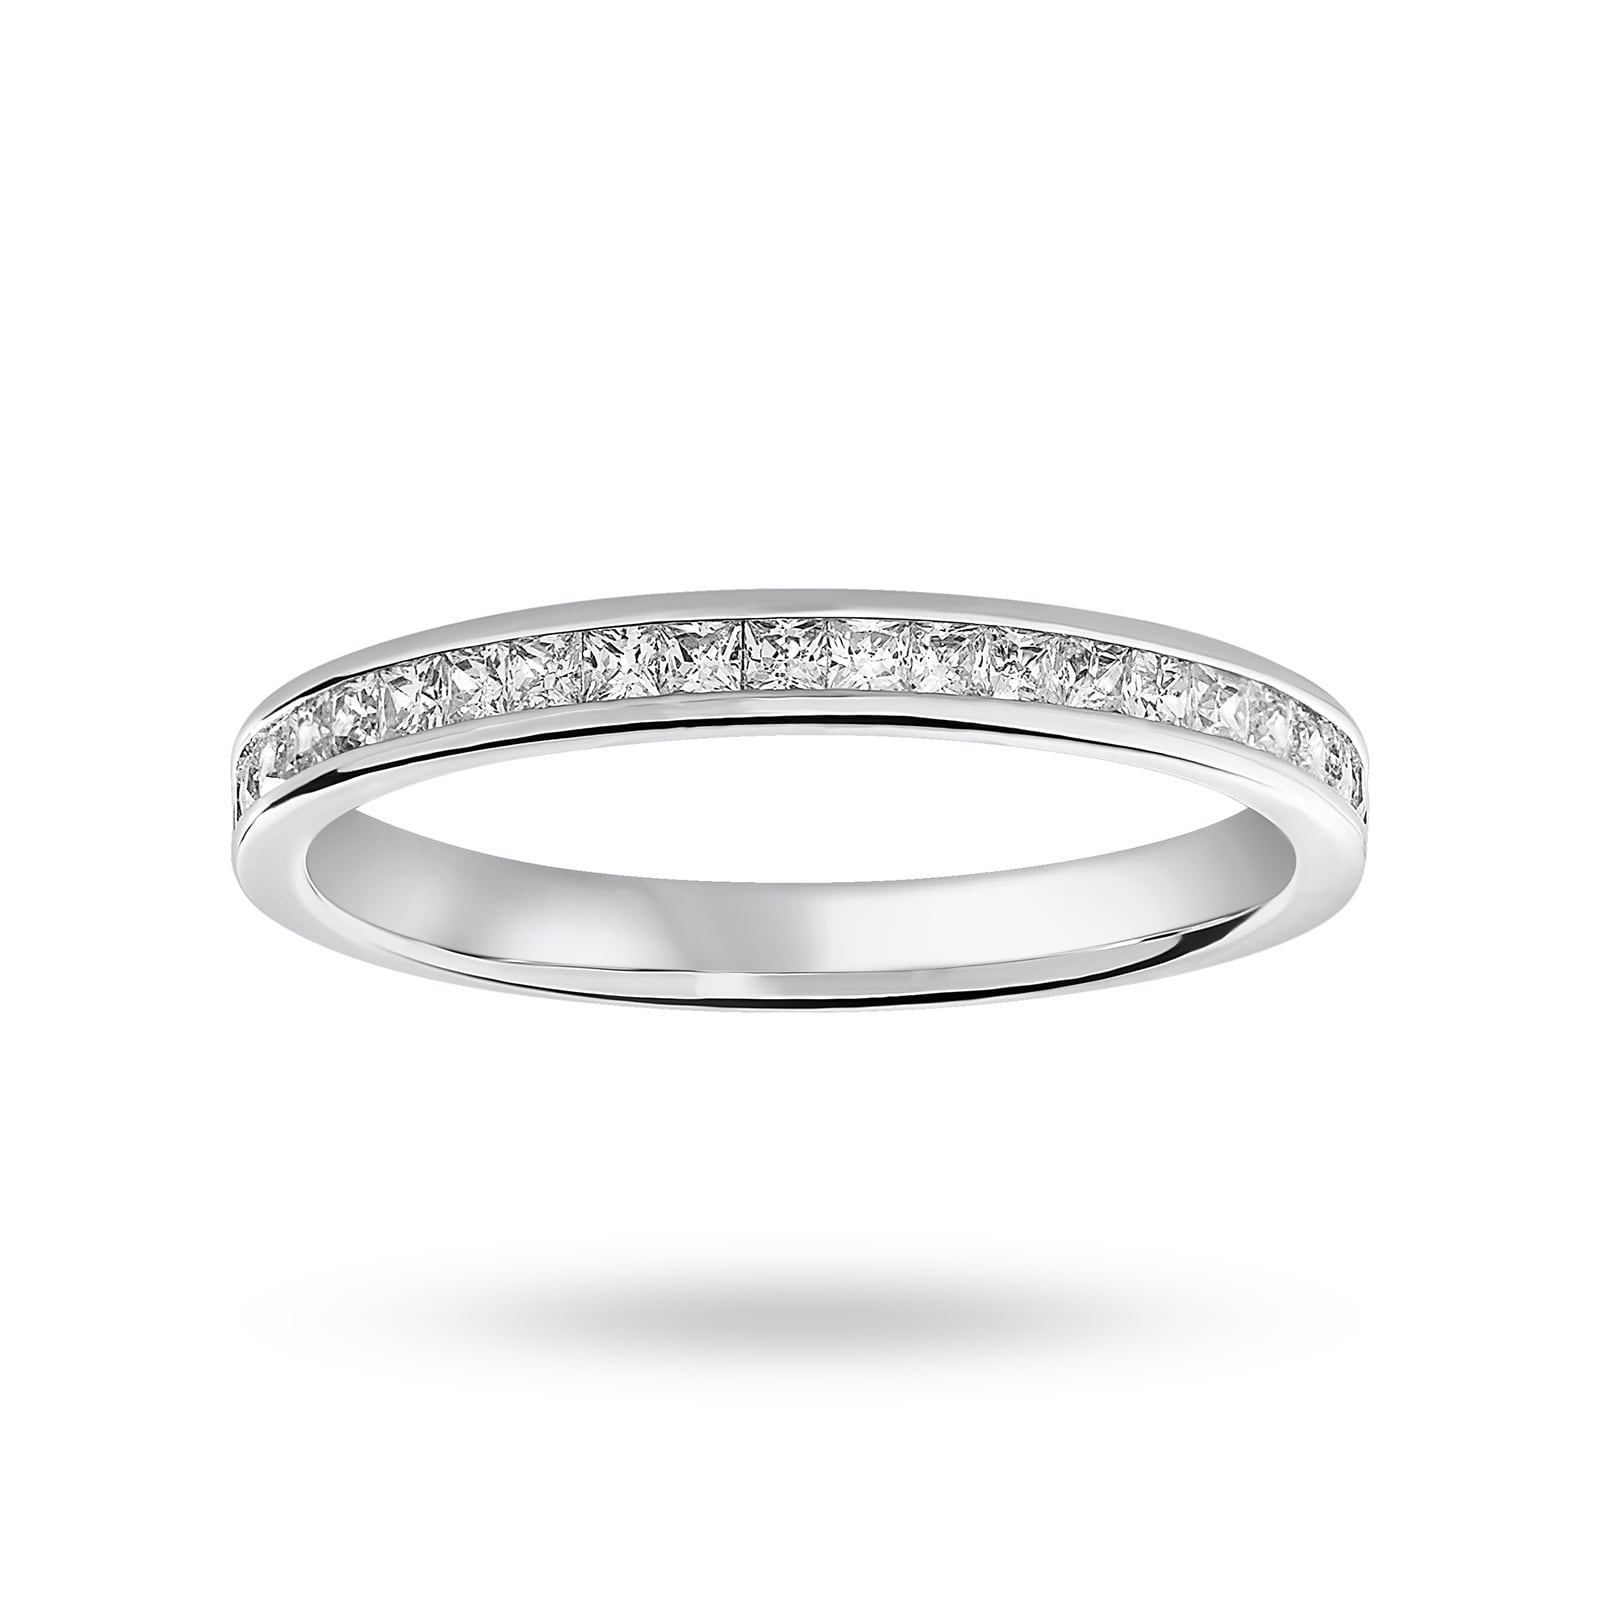 18 Carat White Gold 0.33 Carat Princess Cut Half Eternity Ring - Ring Size P